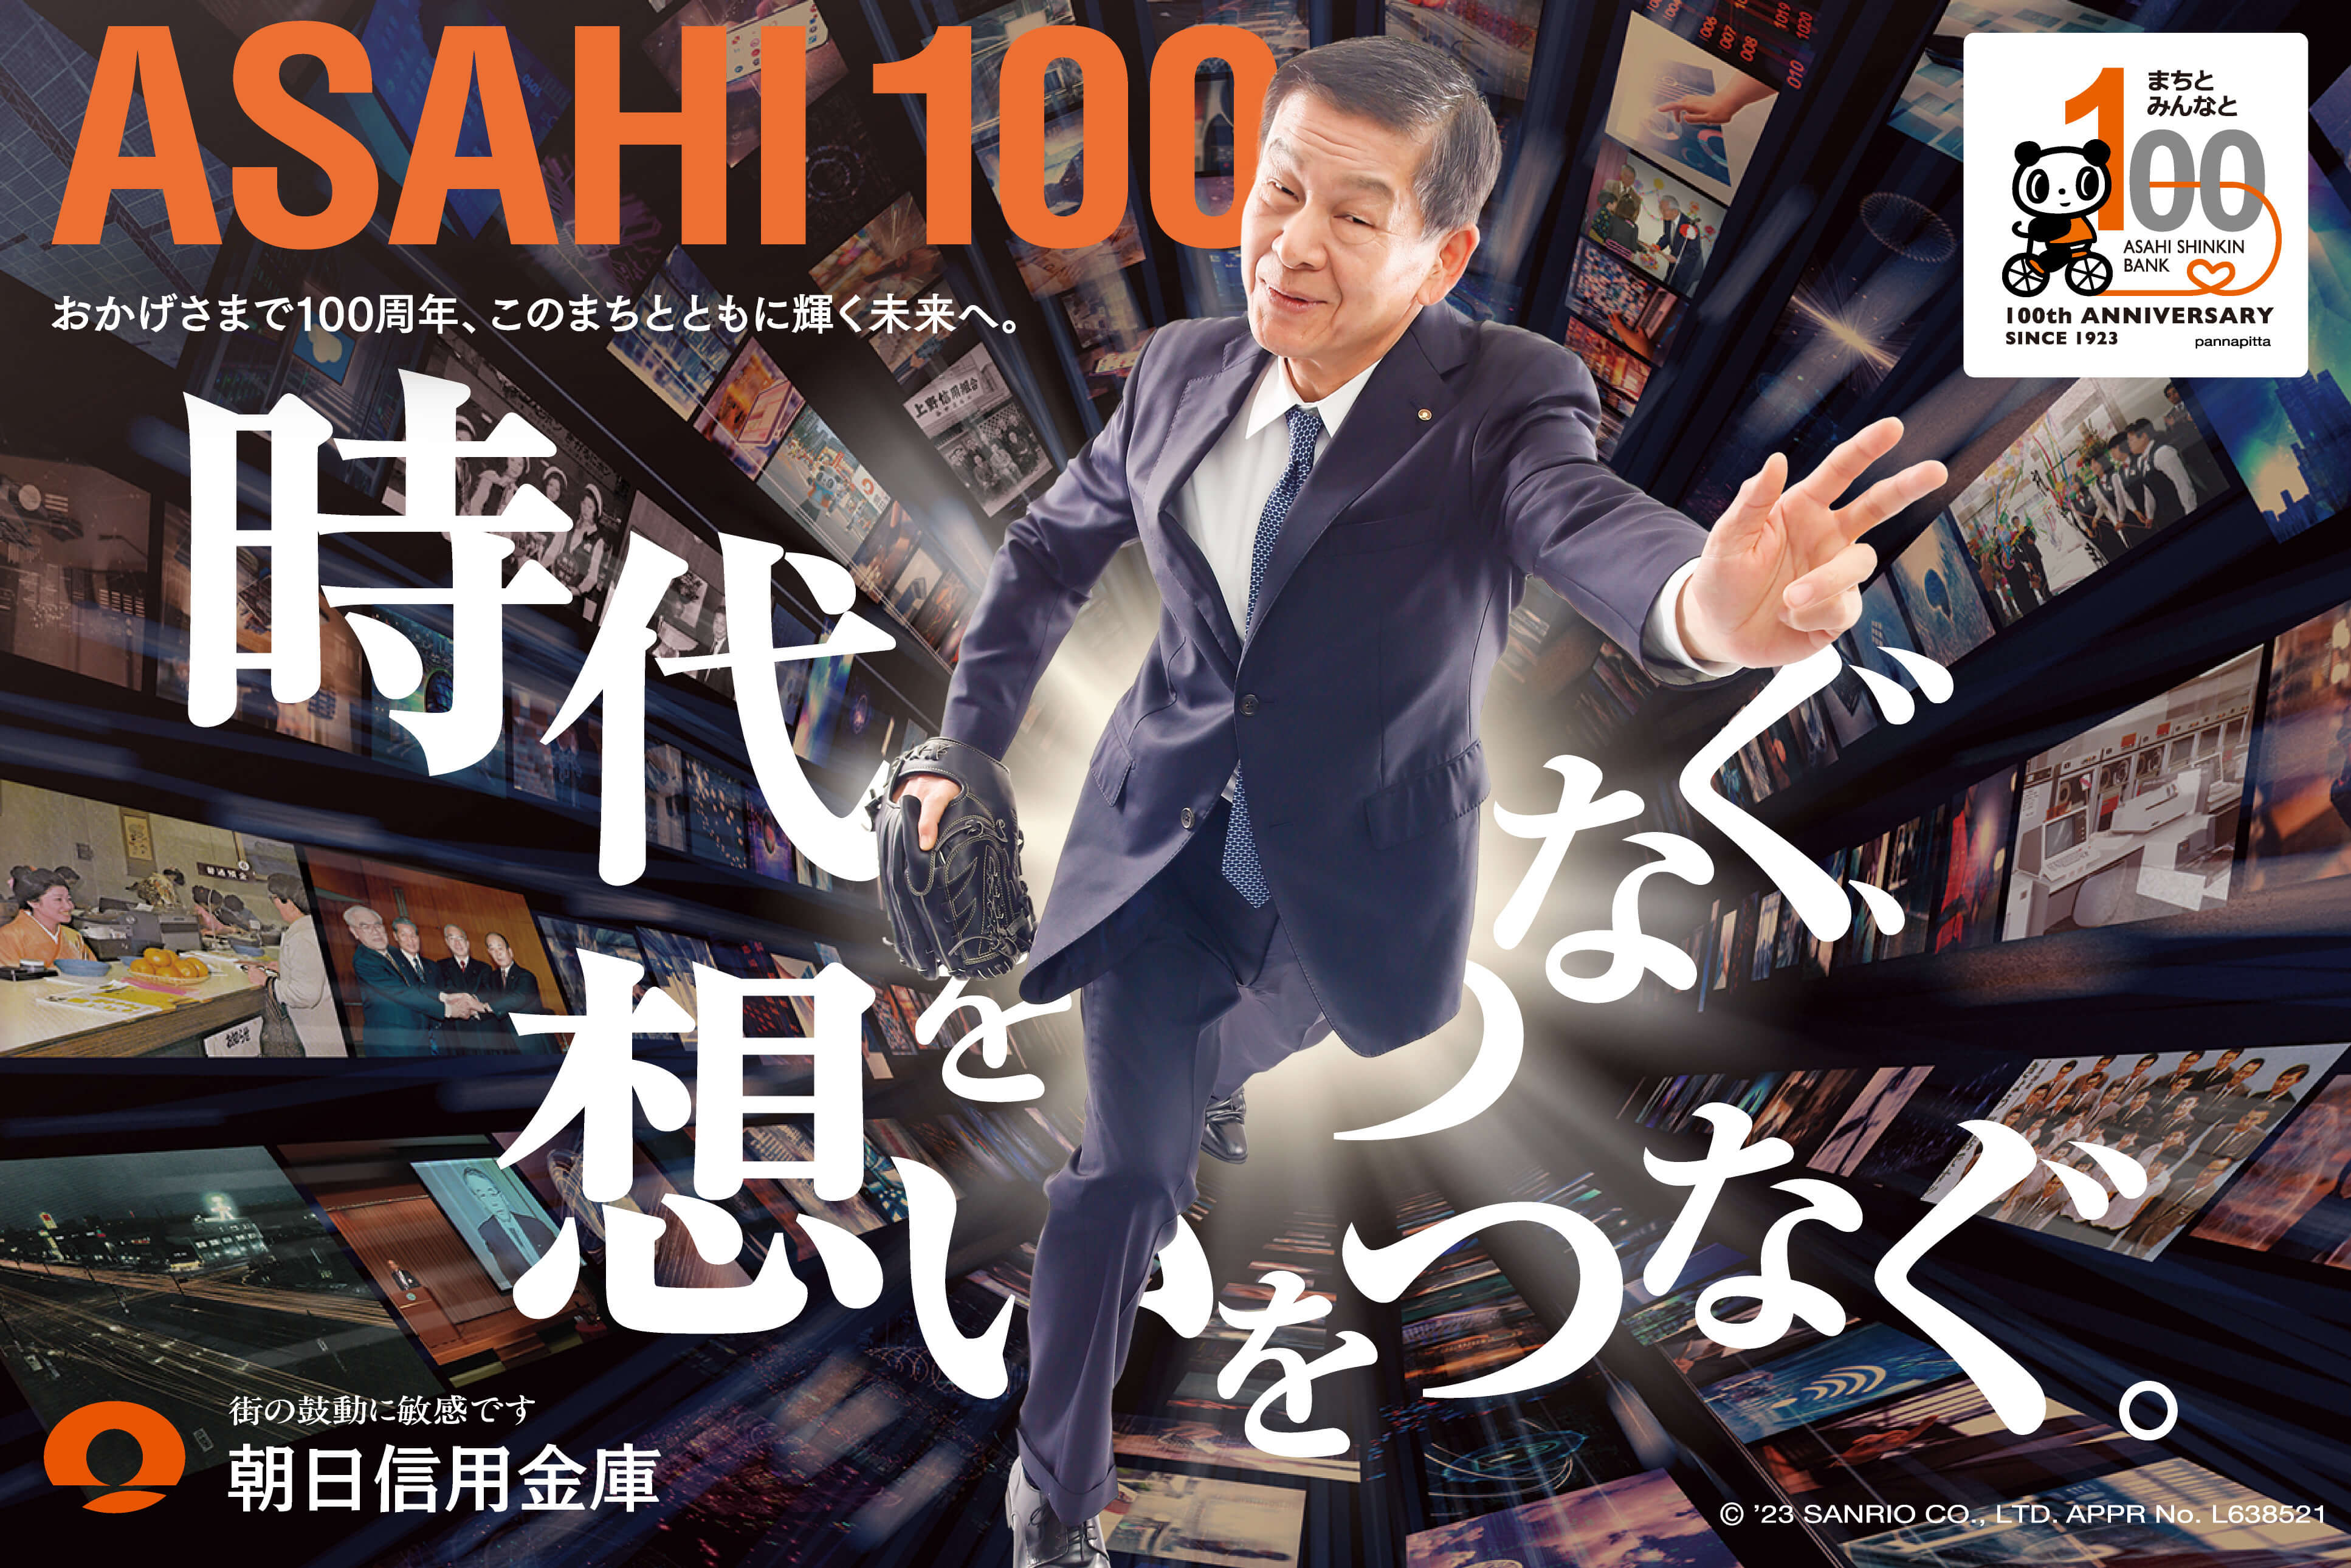 ASAHI 100 おかげさまで100周年、このまちとともに輝く未来へ。